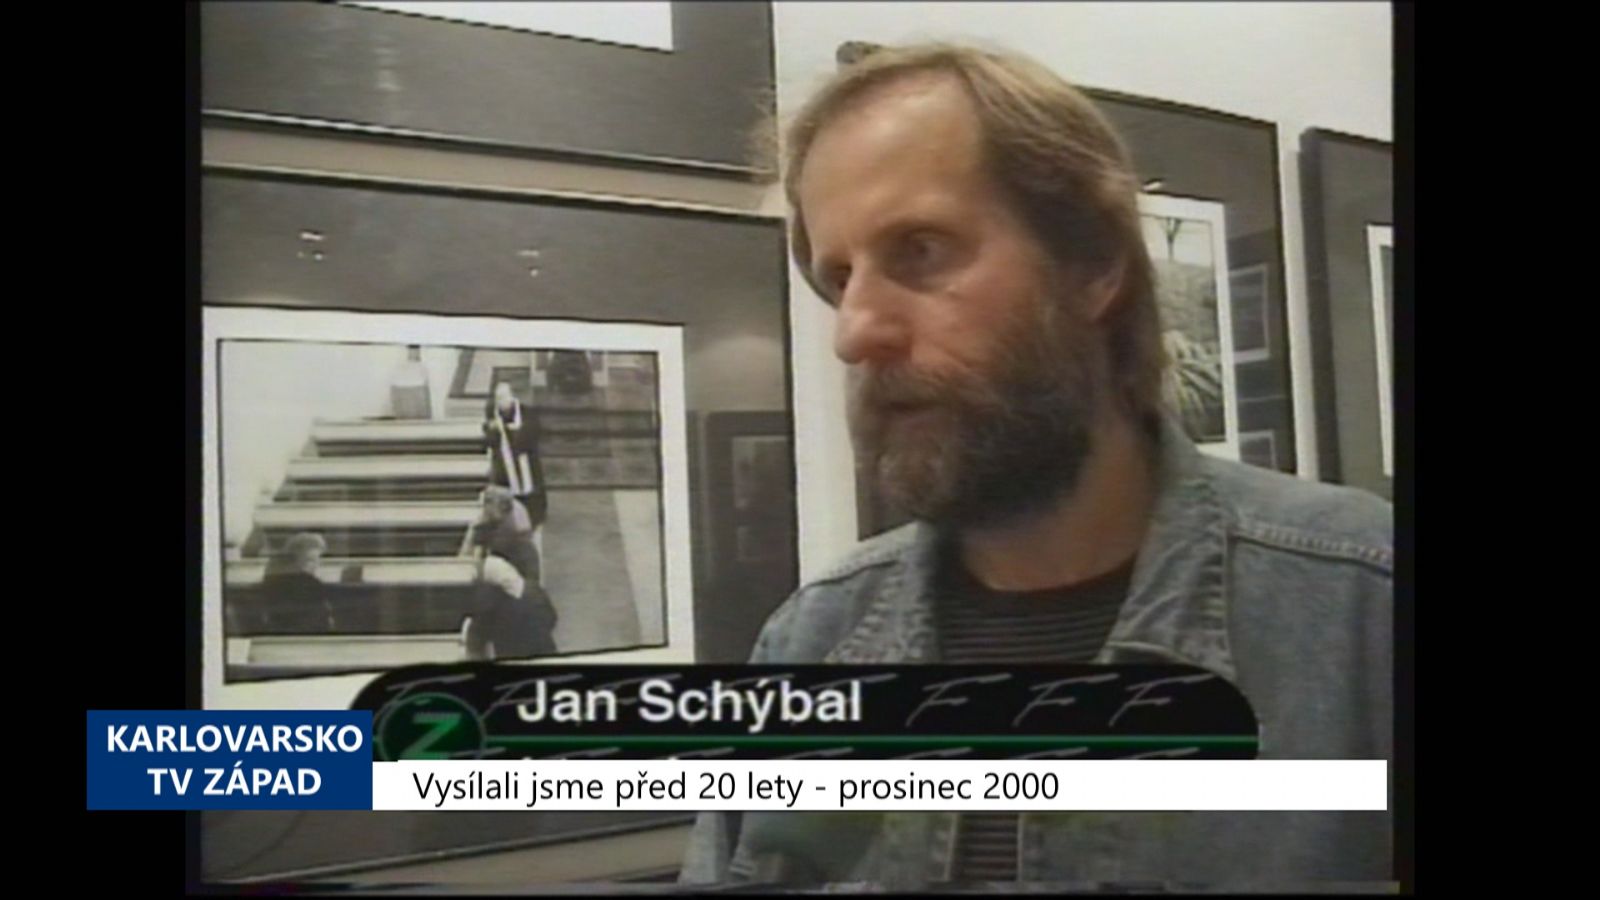 2000 – Cheb: Galerie G4 oslavila 15. narozeniny (TV Západ)